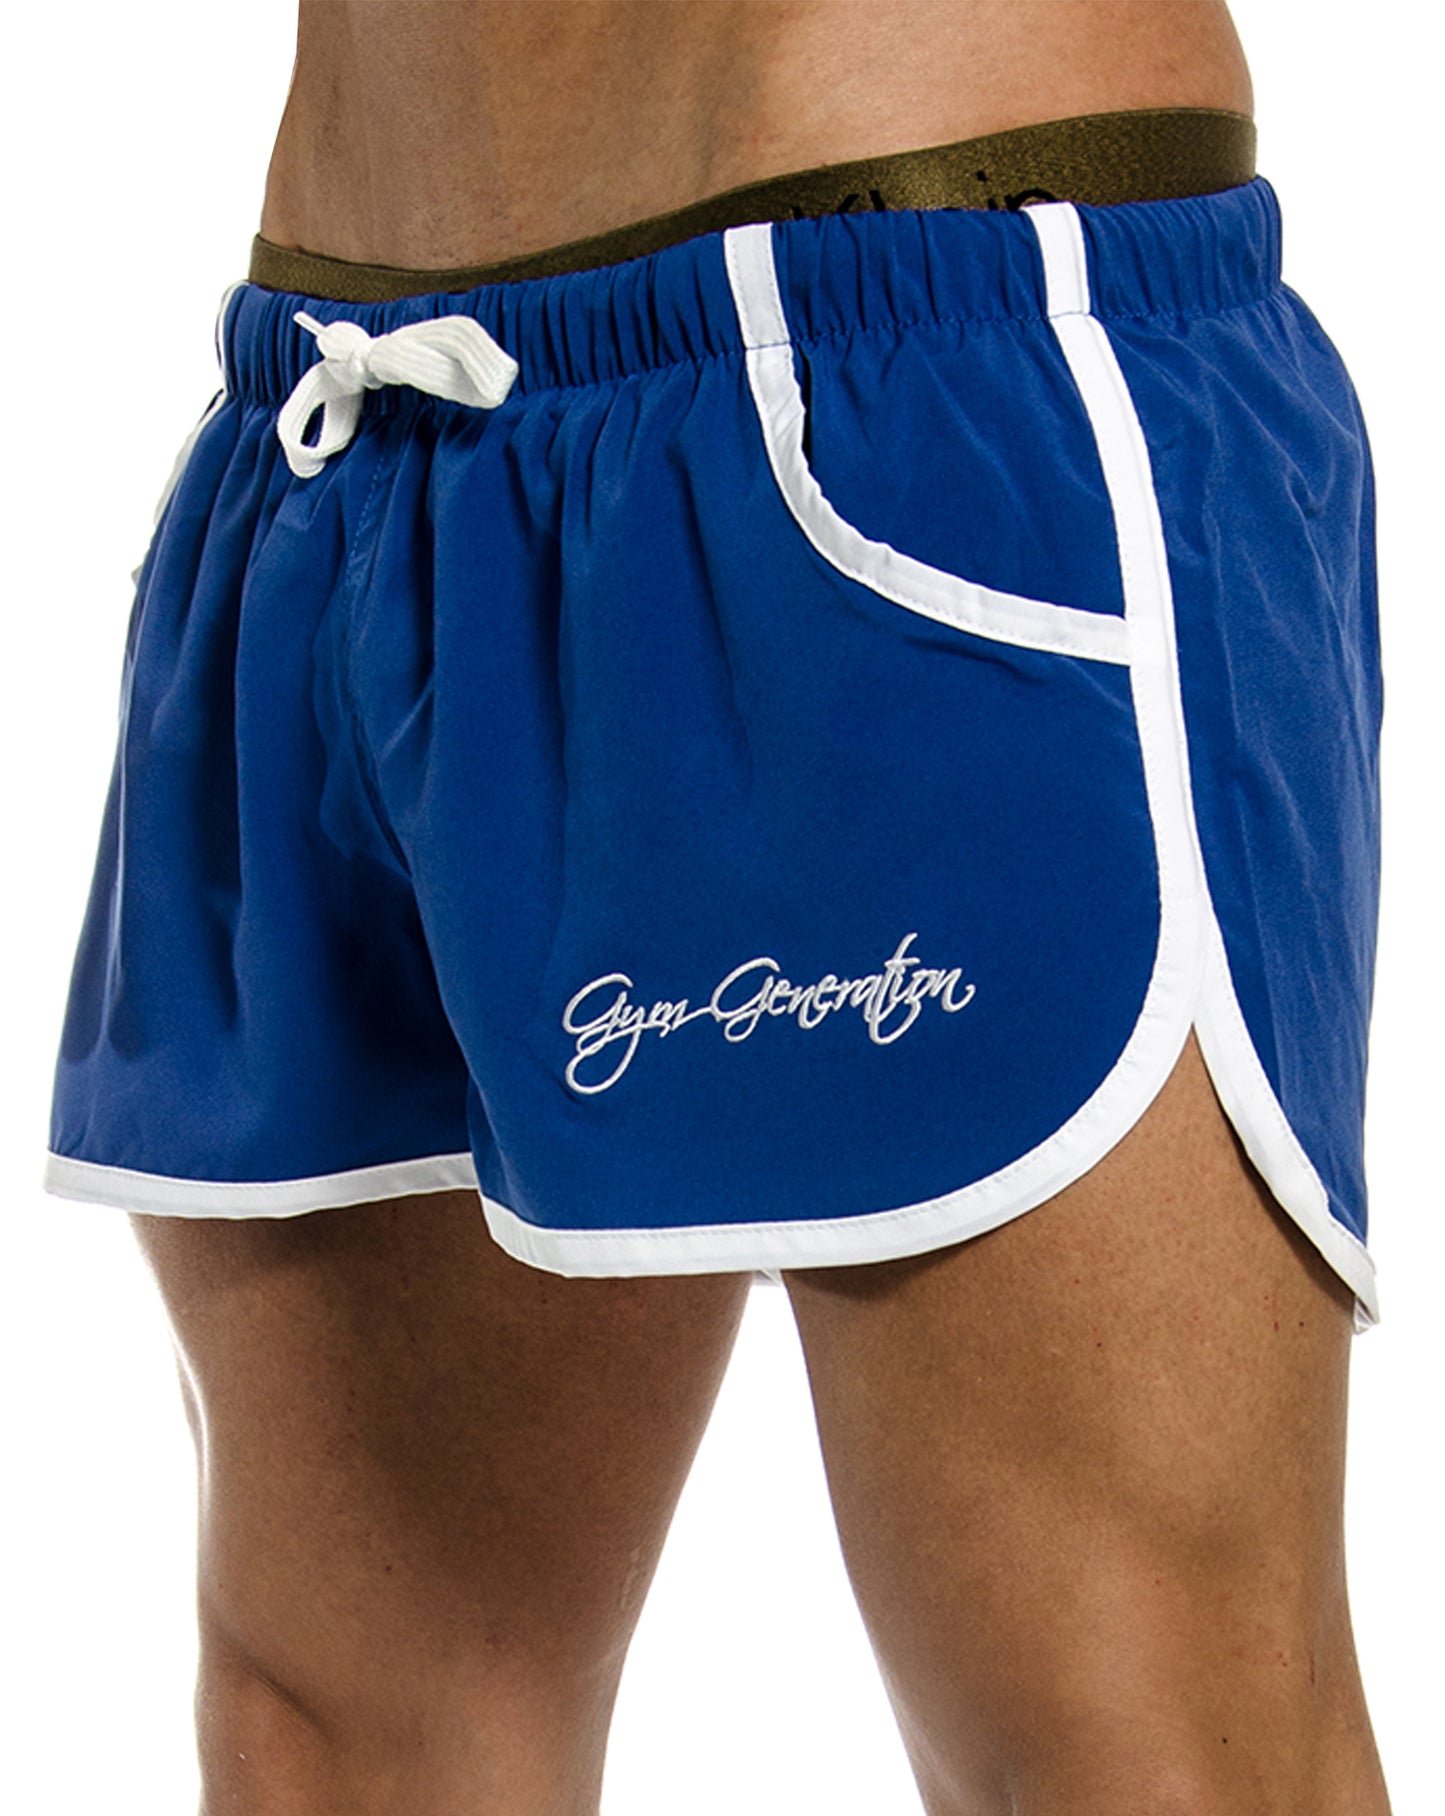 Stylische blaue Gym Shorts von Gym Generation, ideal für Fitnesscenter und Freizeit, mit optimaler Beinfreiheit und Innennetz für zusätzlichen Halt.